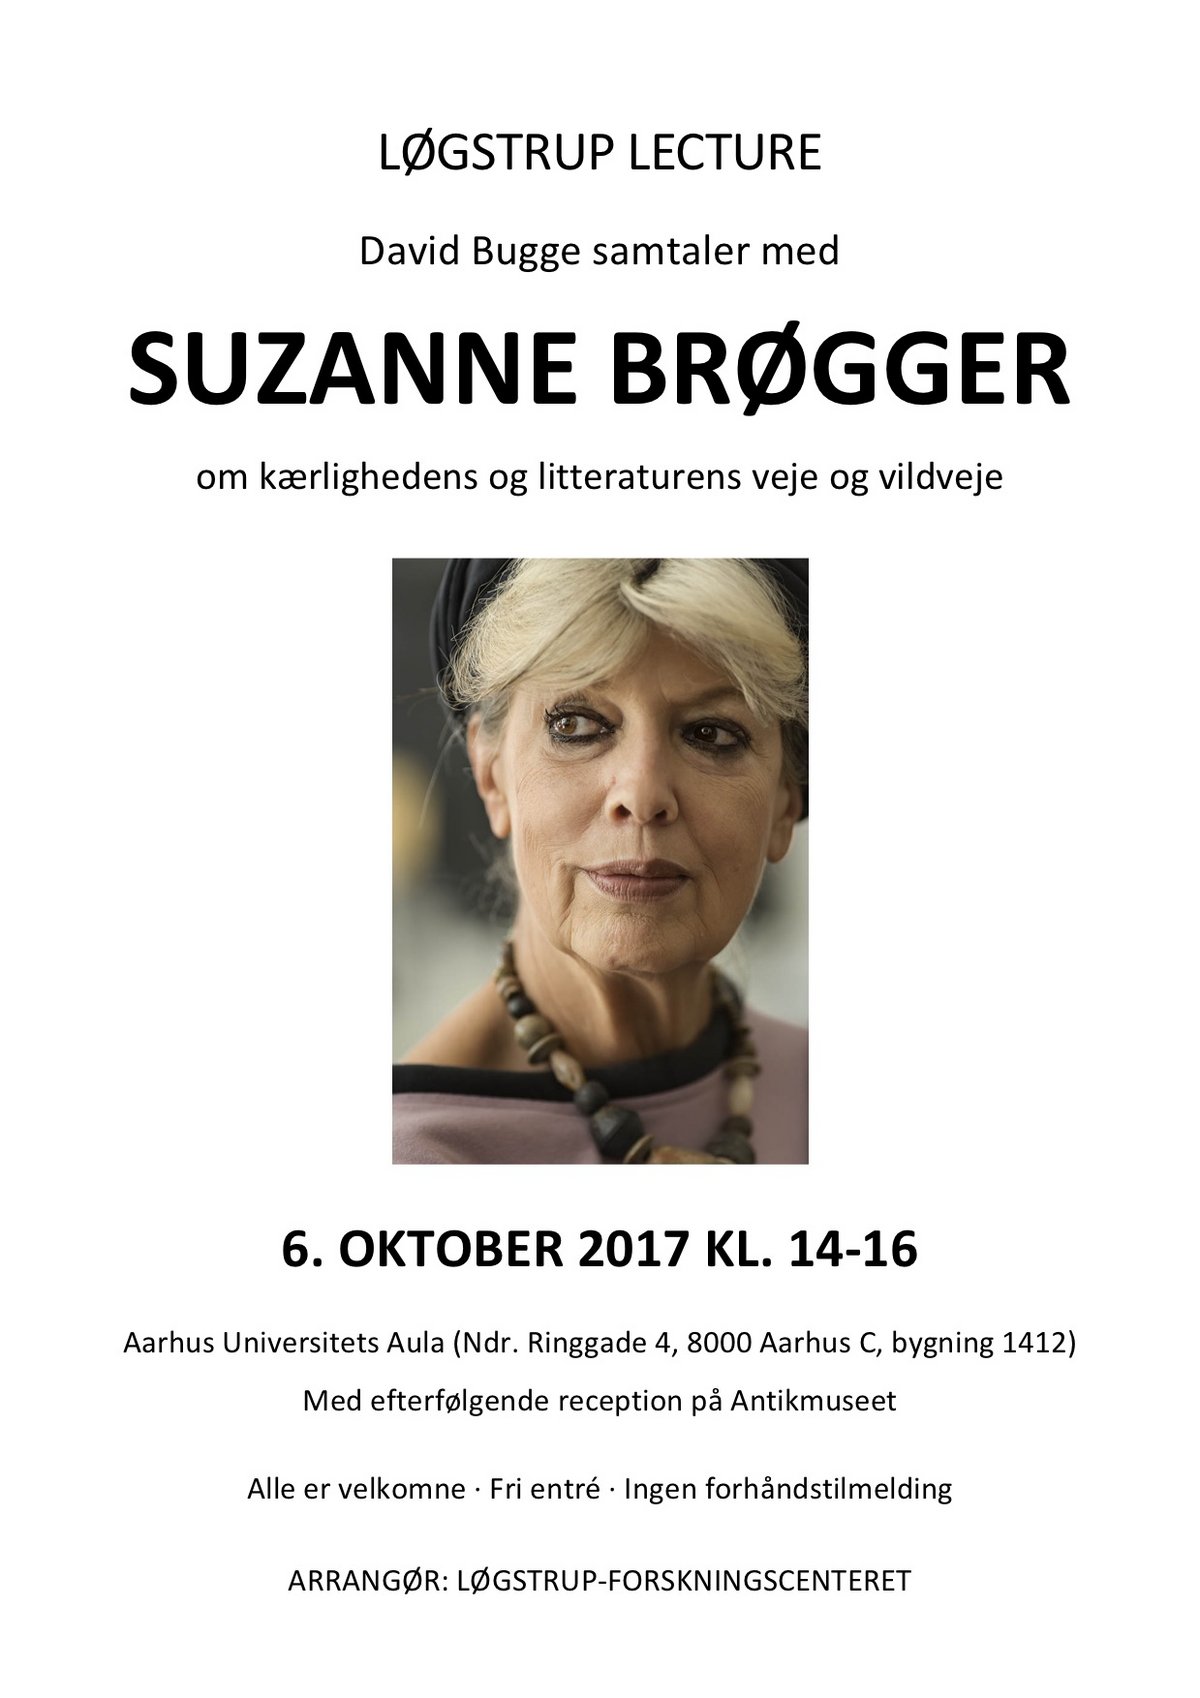 Løgstrup Lecture 2017: Suzanne Brøgger